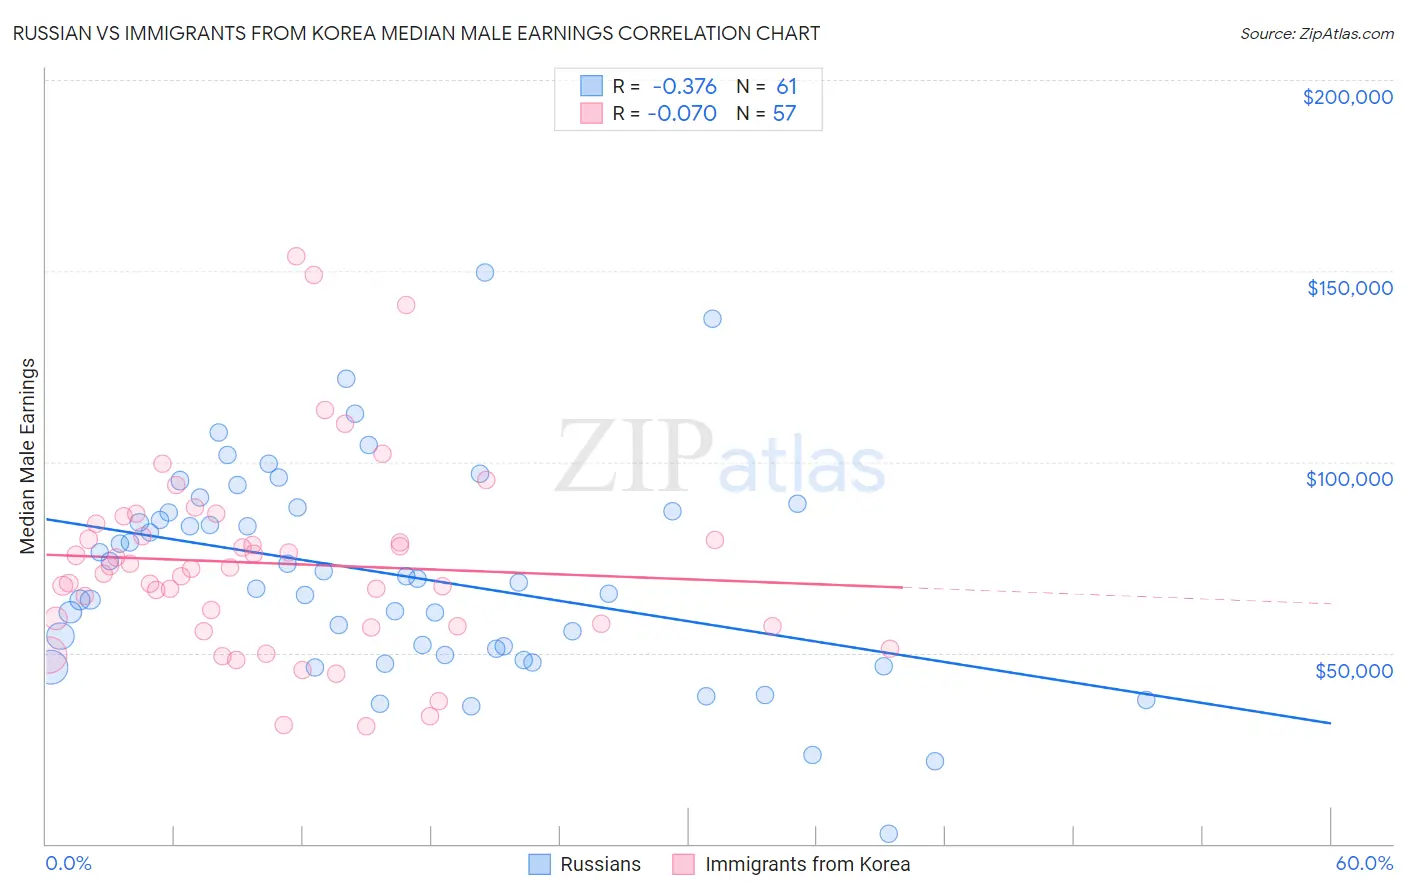 Russian vs Immigrants from Korea Median Male Earnings